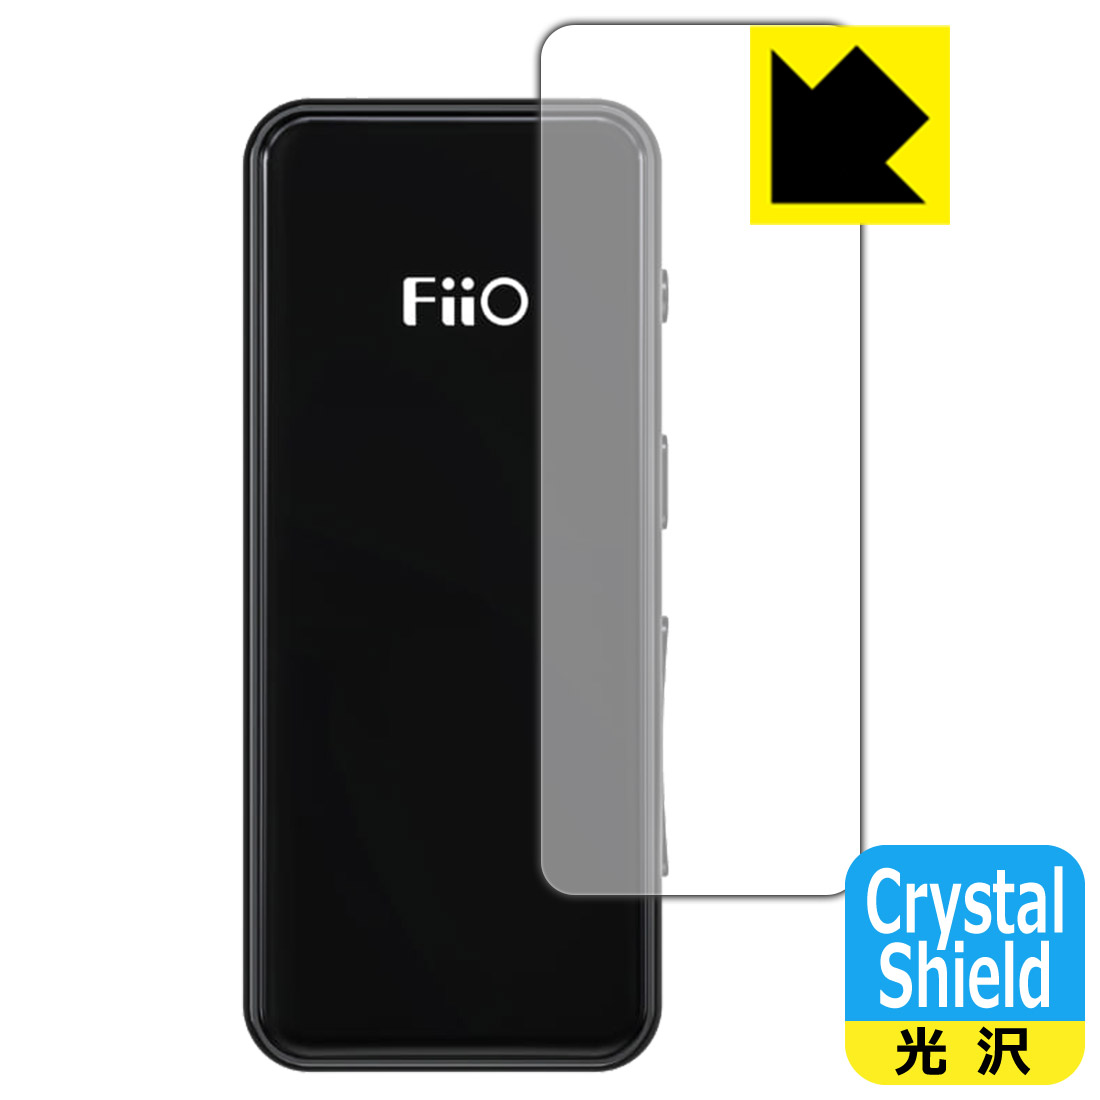 ●対応機種 : FiiO BTR3K●製品内容 : 前面用3枚●※この機器は周辺部が曲面となったラウンド仕様のため、保護フィルムを端まで貼ることができません。(この製品の横幅は約19mmです)　　※前面の端まで保護したい方は、「Flexible Shield」をご購入ください。●「Crystal Shield」は高い透明度と光沢感で、保護フィルムを貼っていないかのようなクリア感のある『光沢タイプの保護フィルム』●安心の国産素材を使用。日本国内の自社工場で製造し出荷しています。【ポスト投函送料無料】商品は【ポスト投函発送 (追跡可能メール便)】で発送します。お急ぎ、配達日時を指定されたい方は以下のクーポンを同時購入ください。【お急ぎ便クーポン】　プラス110円(税込)で速達扱いでの発送。お届けはポストへの投函となります。【配達日時指定クーポン】　プラス550円(税込)で配達日時を指定し、宅配便で発送させていただきます。【お急ぎ便クーポン】はこちらをクリック【配達日時指定クーポン】はこちらをクリック 　 貼っていることを意識させないほどの高い透明度に、高級感あふれる光沢・クリアな仕上げとなります。 動画視聴や画像編集など、機器本来の発色を重視したい方におすすめです。 ハードコート加工がされており、キズや擦れに強くなっています。簡単にキズがつかず長くご利用いただけます。 表面はフッ素コーティングがされており、皮脂や汚れがつきにくく、また、落ちやすくなっています。 指滑りもなめらかで、快適な使用感です。 油性マジックのインクもはじきますので簡単に拭き取れます。 接着面は気泡の入りにくい特殊な自己吸着タイプです。素材に柔軟性があり、貼り付け作業も簡単にできます。また、はがすときにガラス製フィルムのように割れてしまうことはありません。 貼り直しが何度でもできるので、正しい位置へ貼り付けられるまでやり直すことができます。 抗菌加工によりフィルム表面の菌の繁殖を抑えることができます。清潔な画面を保ちたい方におすすめです。 ※抗菌率99.9％ / JIS Z2801 抗菌性試験方法による評価 最高級グレードの国産素材を日本国内の弊社工場で加工している完全な Made in Japan です。安心の品質をお届けします。 使用上の注意 ●本製品は機器の画面をキズなどから保護するフィルムです。他の目的にはご使用にならないでください。 ●本製品は液晶保護および機器本体を完全に保護することを保証するものではありません。機器の破損、損傷、故障、その他損害につきましては一切の責任を負いかねます。 ●製品の性質上、画面操作の反応が変化したり、表示等が変化して見える場合がございます。 ●貼り付け作業時の失敗(位置ズレ、汚れ、ゆがみ、折れ、気泡など)および取り外し作業時の破損、損傷などについては、一切の責任を負いかねます。 ●水に濡れた状態でのご使用は吸着力の低下などにより、保護フィルムがはがれてしまう場合がございます。防水対応の機器でご使用の場合はご注意ください。 ●アルコール類やその他薬剤を本製品に付着させないでください。表面のコーティングや吸着面が変質するおそれがあります。 ●品質向上のため、仕様などを予告なく変更する場合がございますので、予めご了承ください。